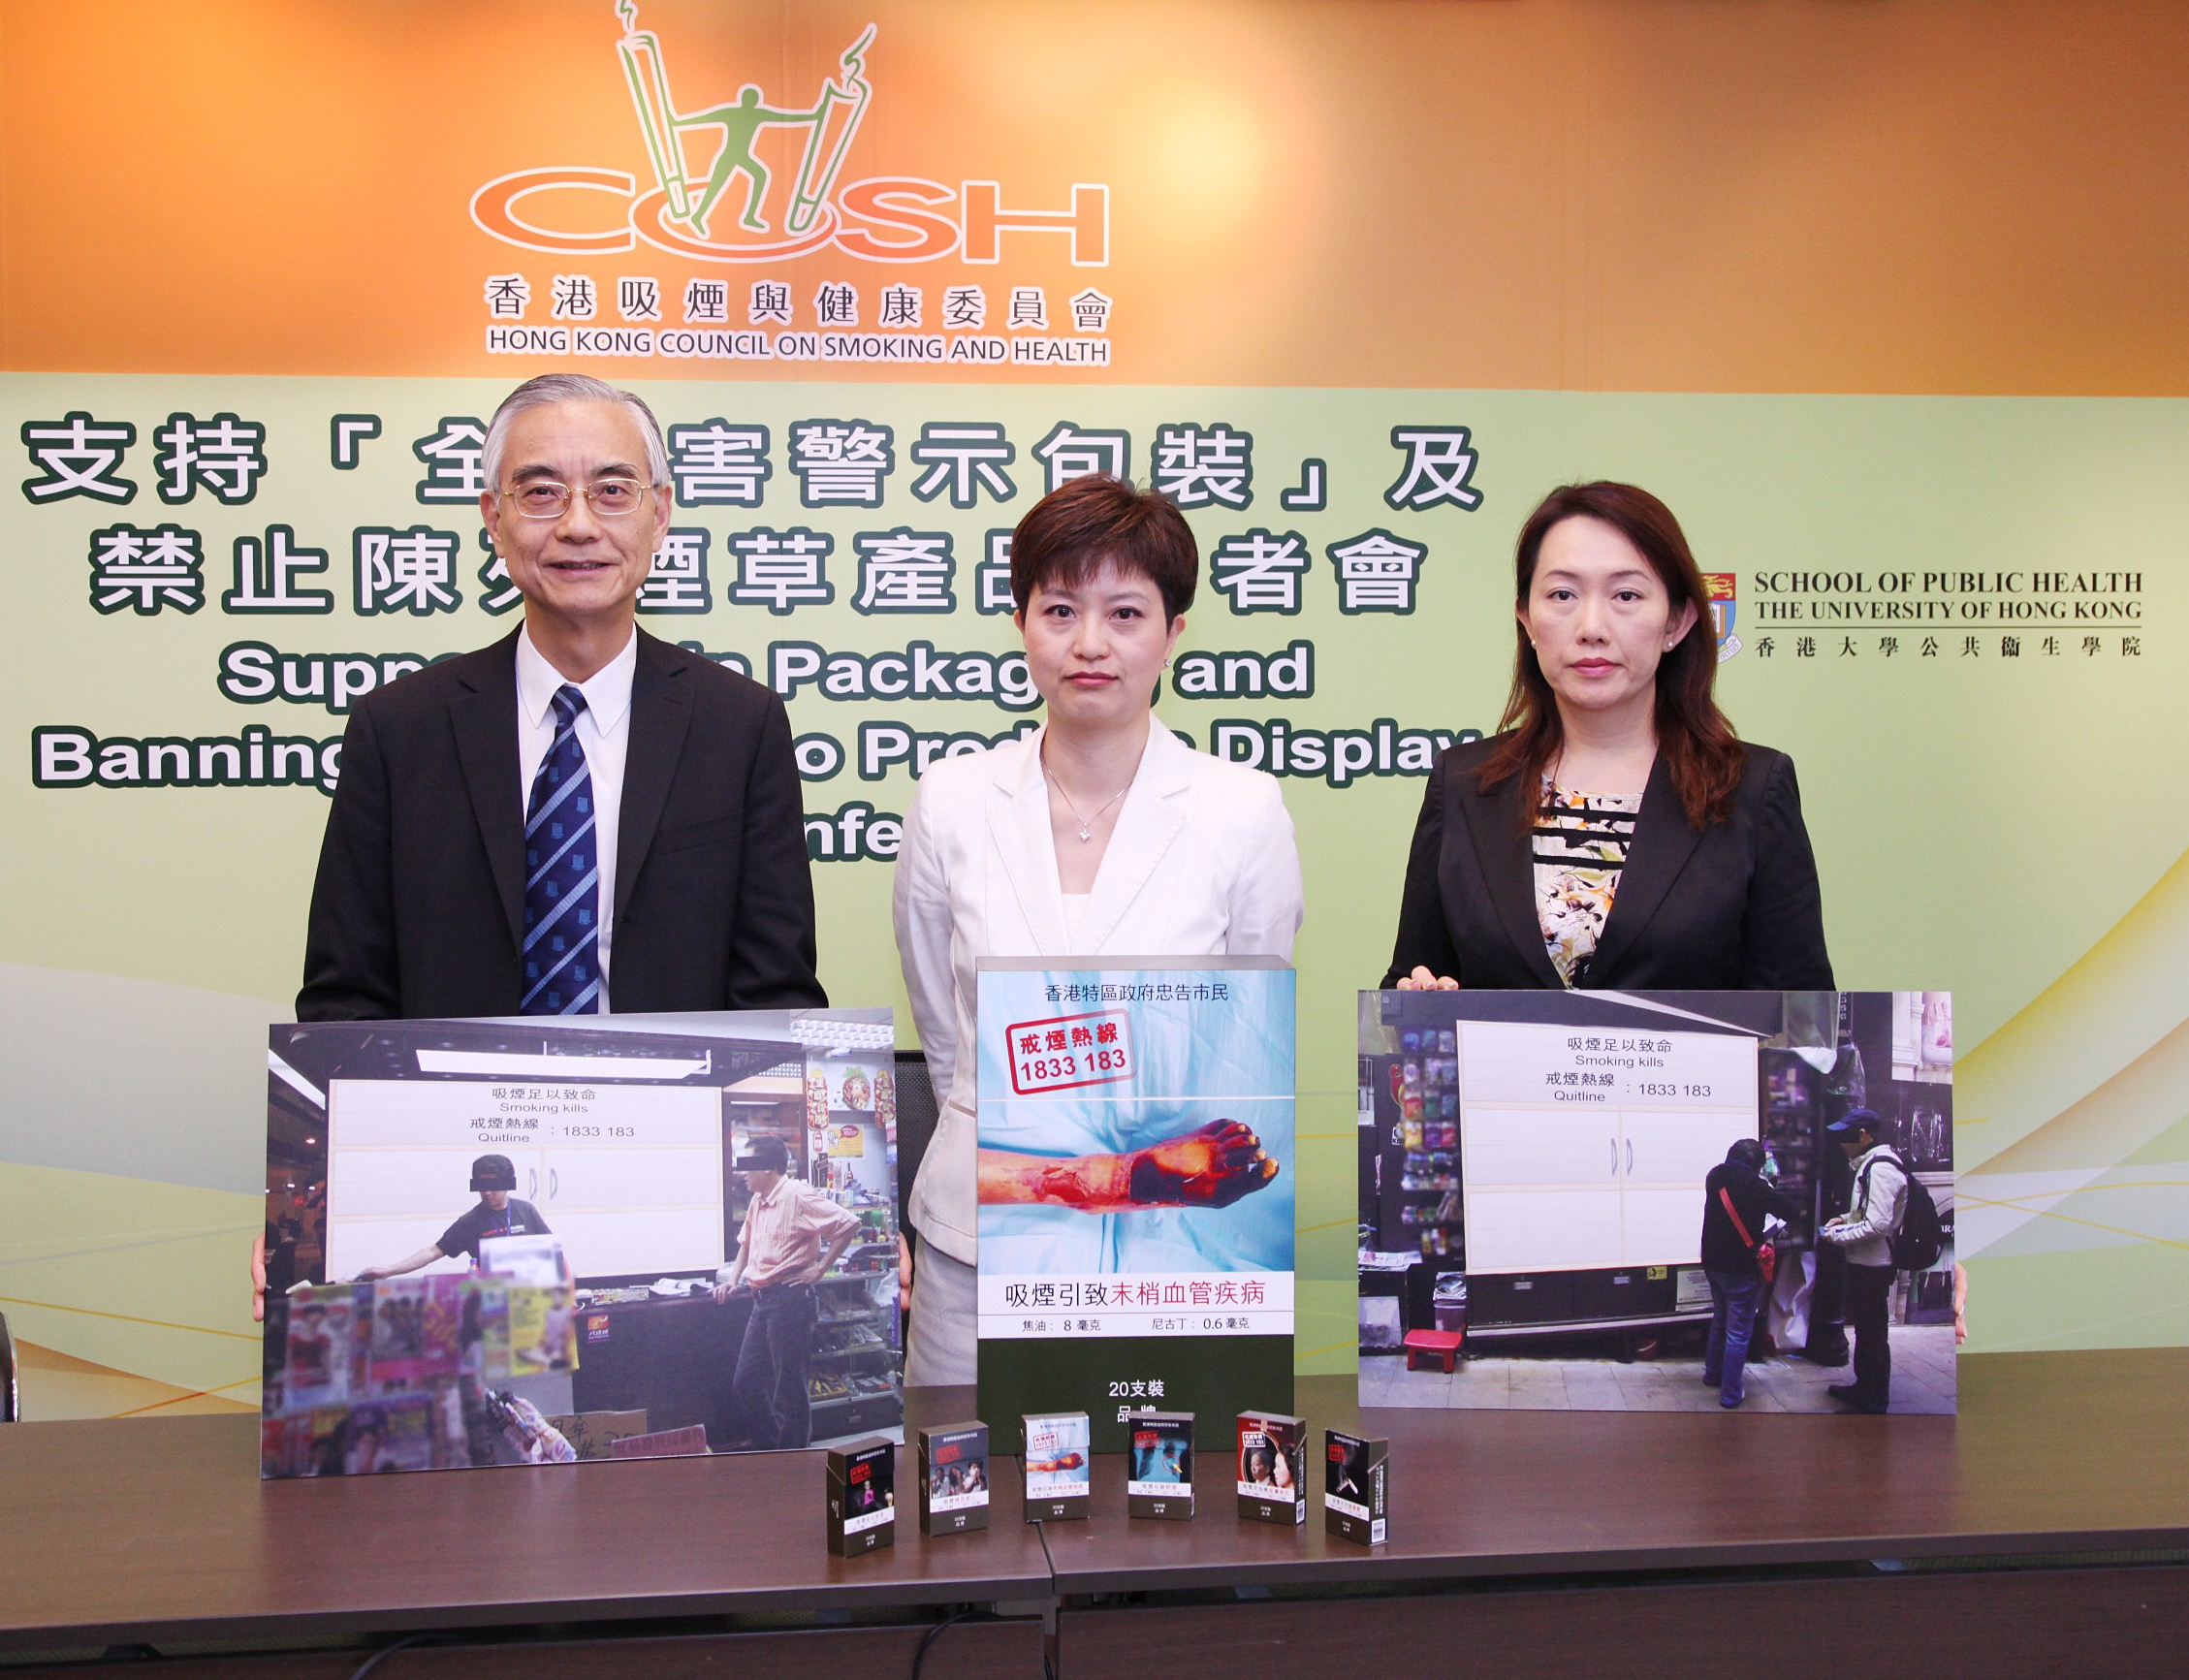 相片一：香港吸煙與健康委員會倡議推行『全煙害警示包裝』，並建議禁止陳列煙草產品。